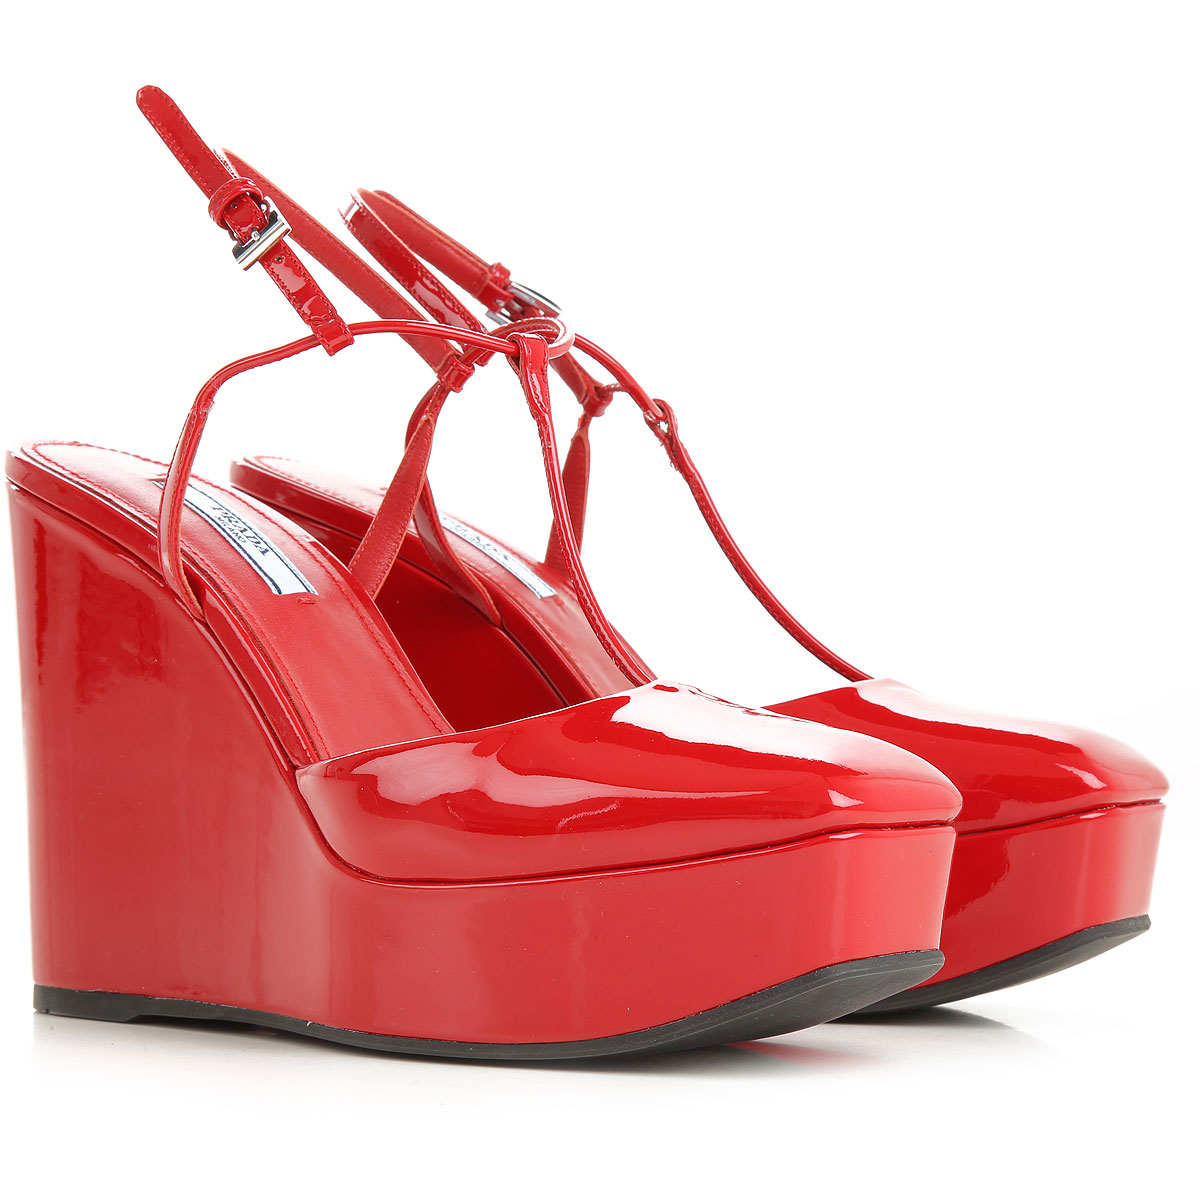 Red outlet. Прада обувь женская. Лакированные красные сабо. Туфли Прада. Прада обувь красная.